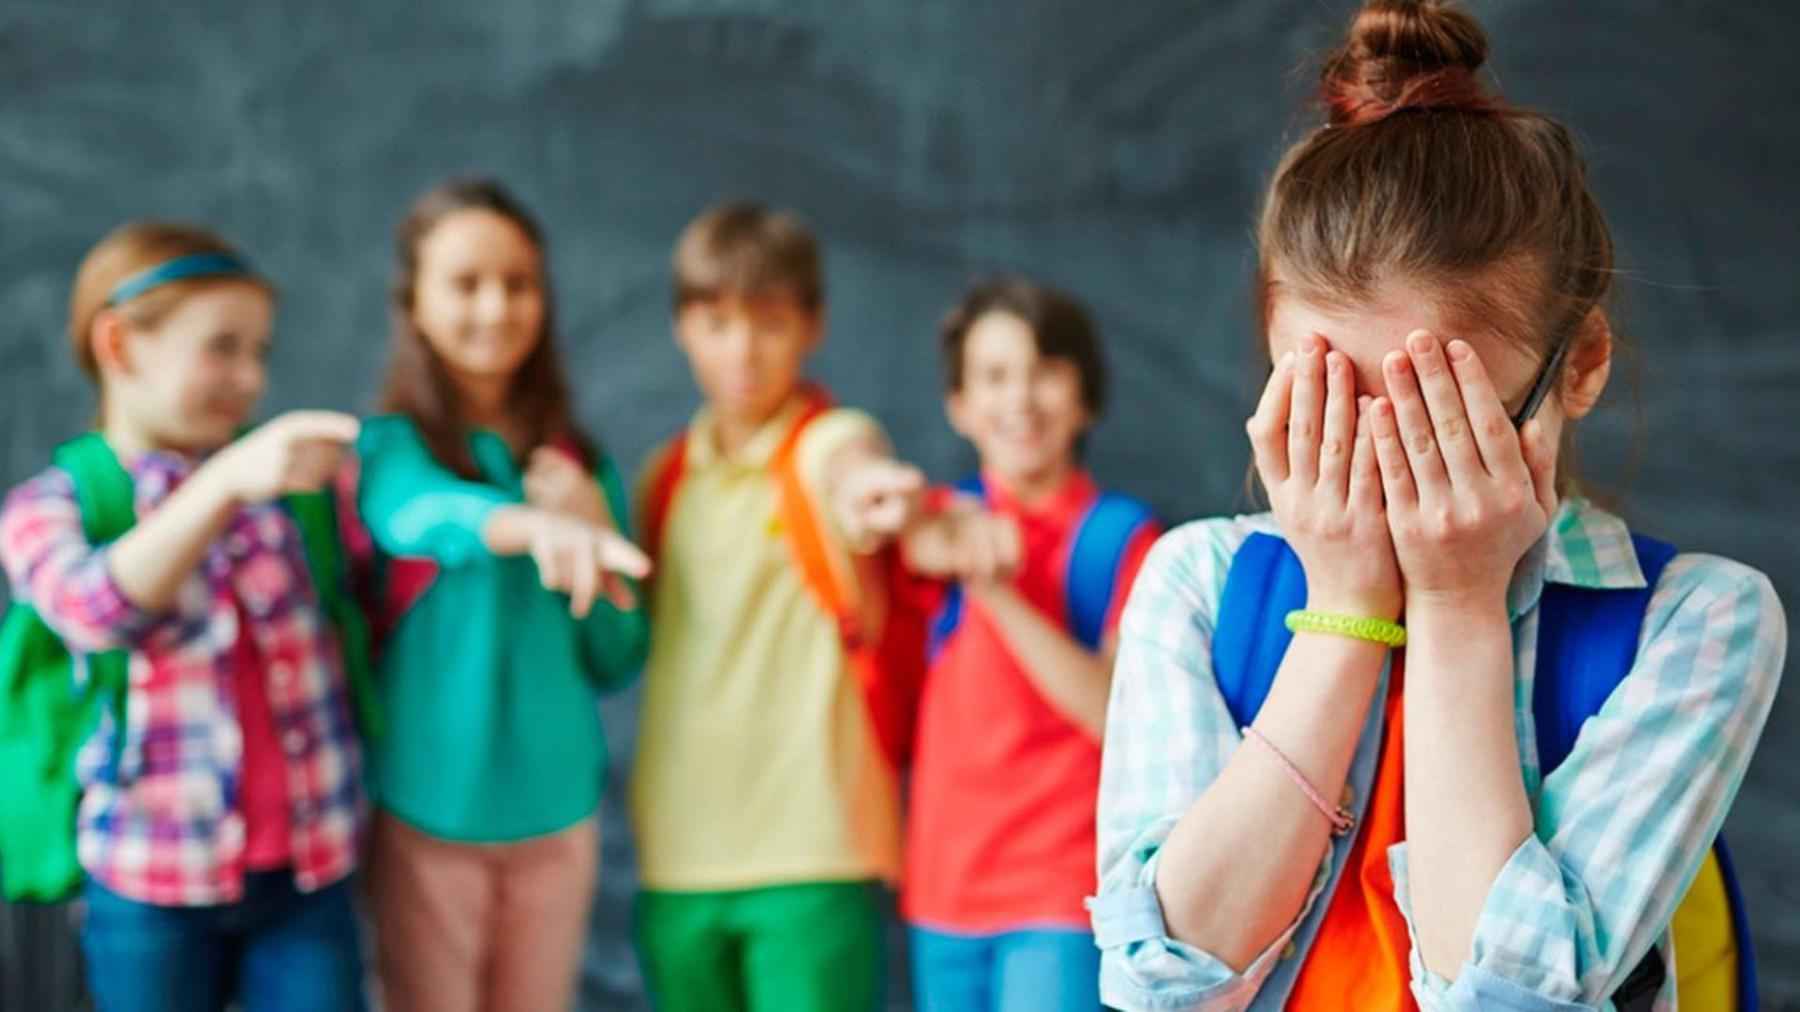 Bullying  adotivo, já ouviu falar nessa modalidade de ataque nas escolas? - Wikimedia Commons